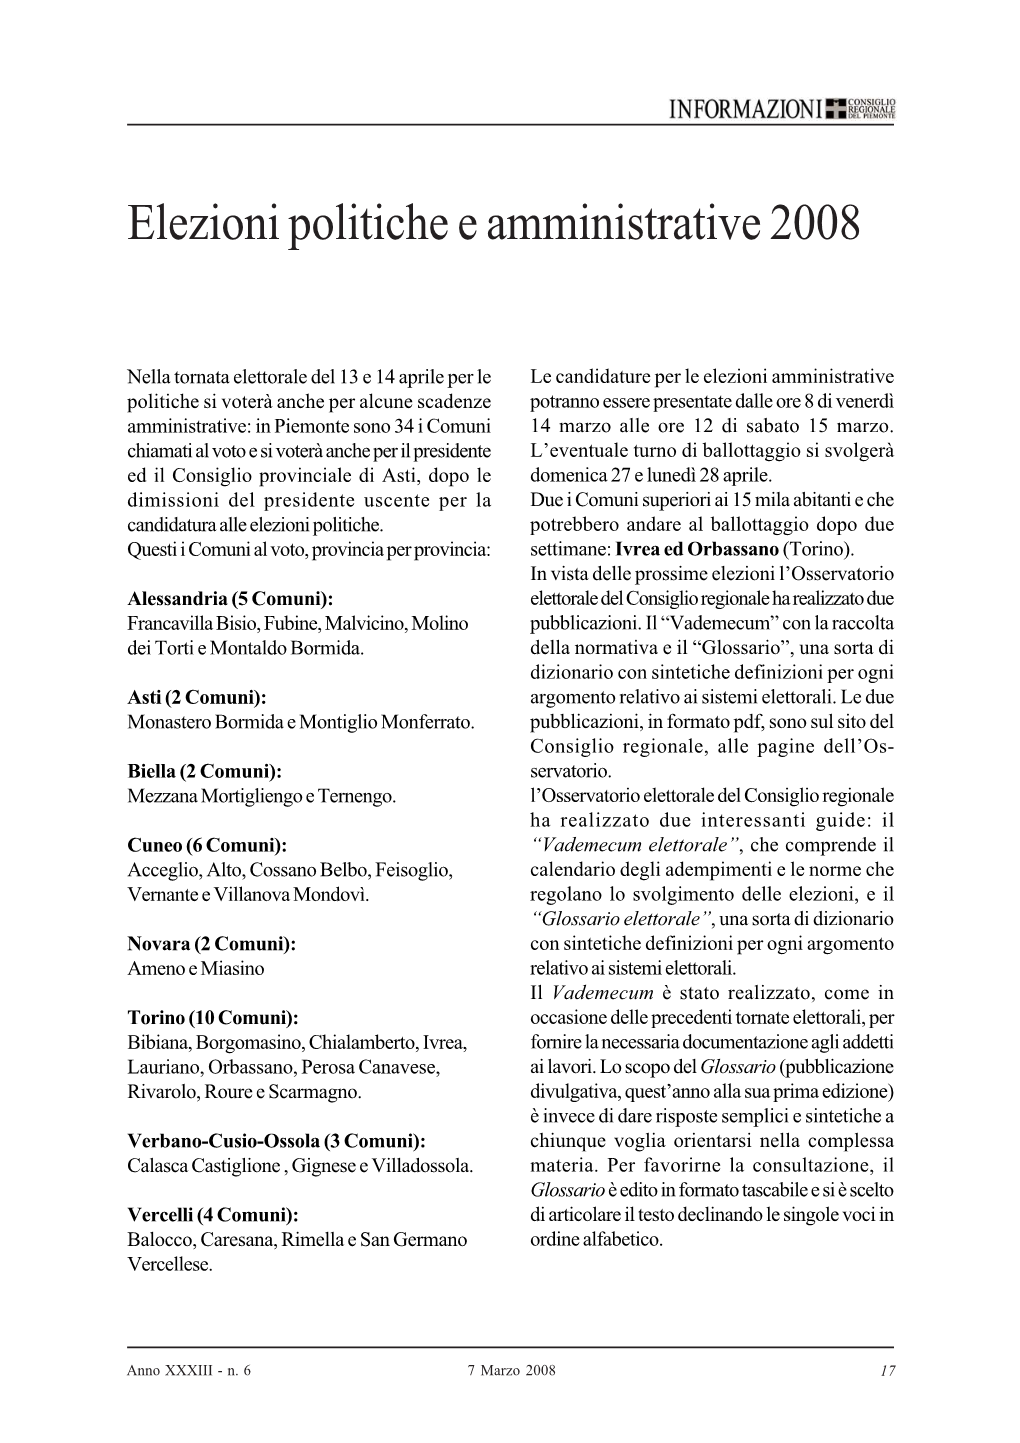 Elezioni Politiche E Amministrative 2008